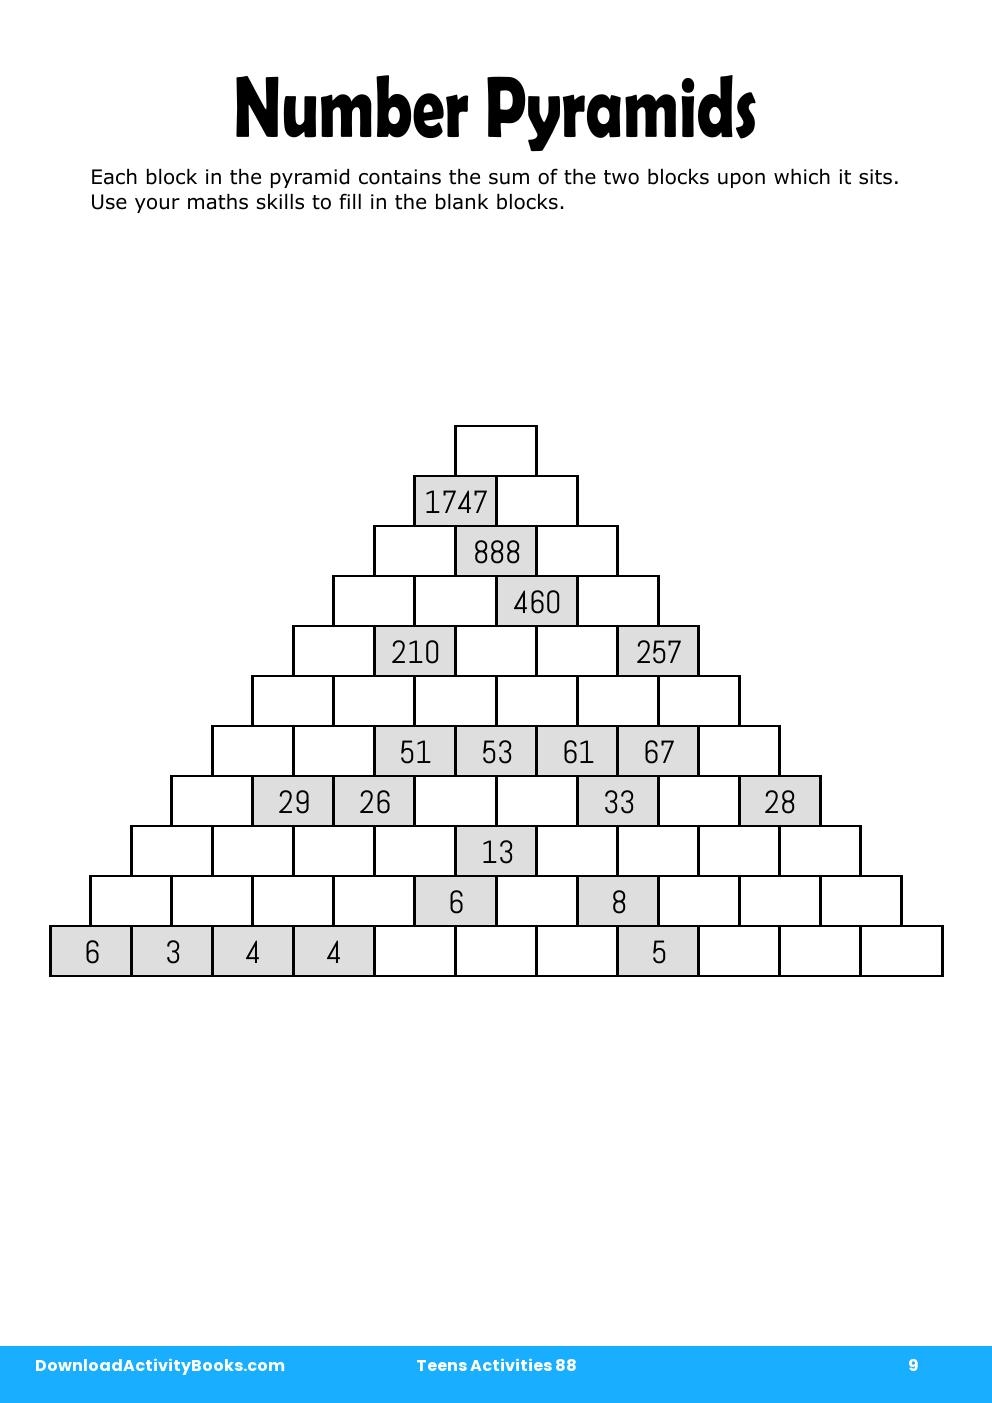 Number Pyramids in Teens Activities 88